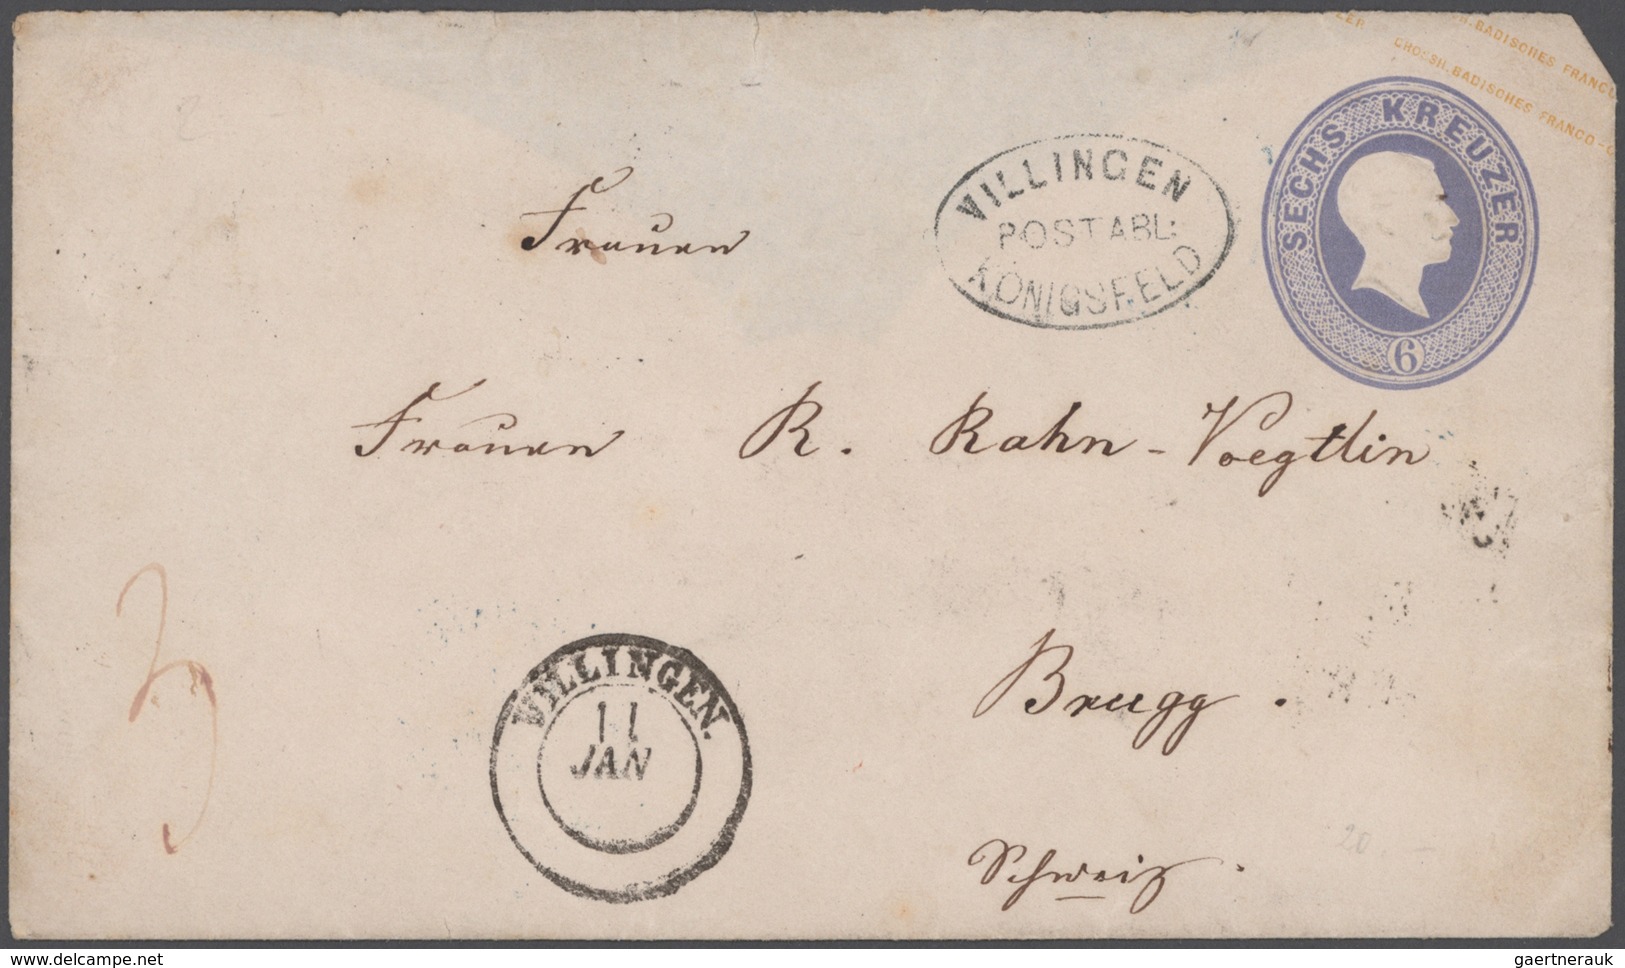 Baden - Marken und Briefe: 1855-1869, Partie mit 38 Briefen und Ganzsachen, dabei zahlreiche Postabl